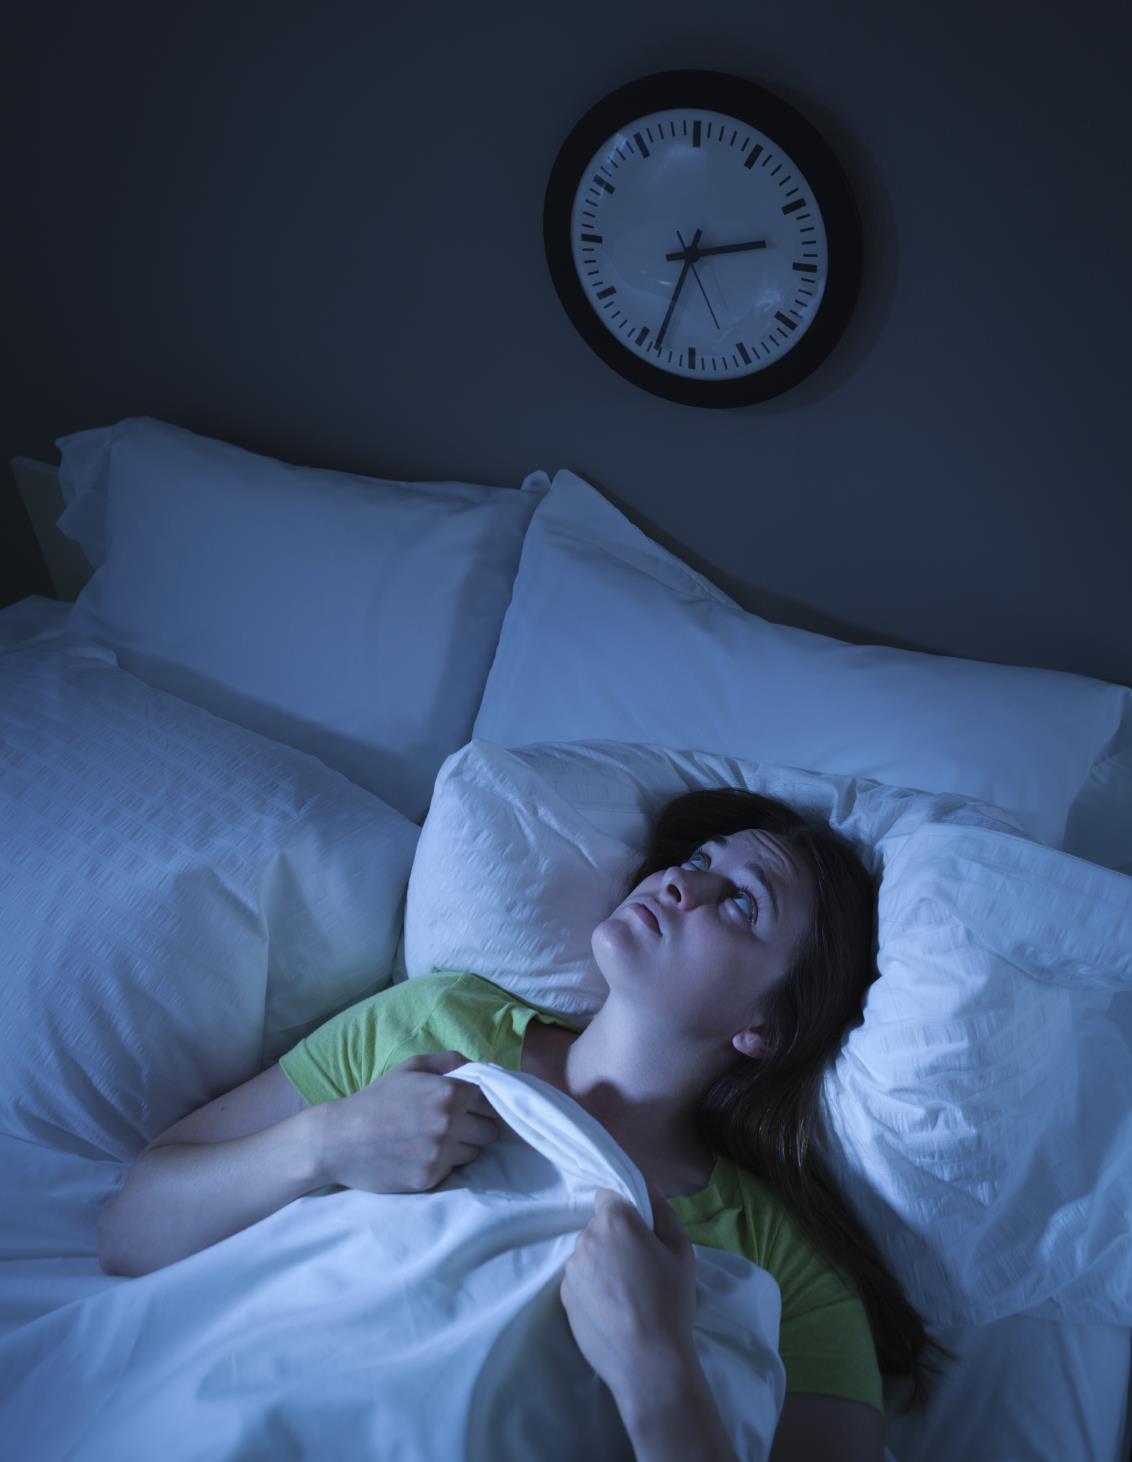 Η αϋπνία αυξάνει τον κίνδυνο εκδήλωσης εγκεφαλικού επεισοδίου